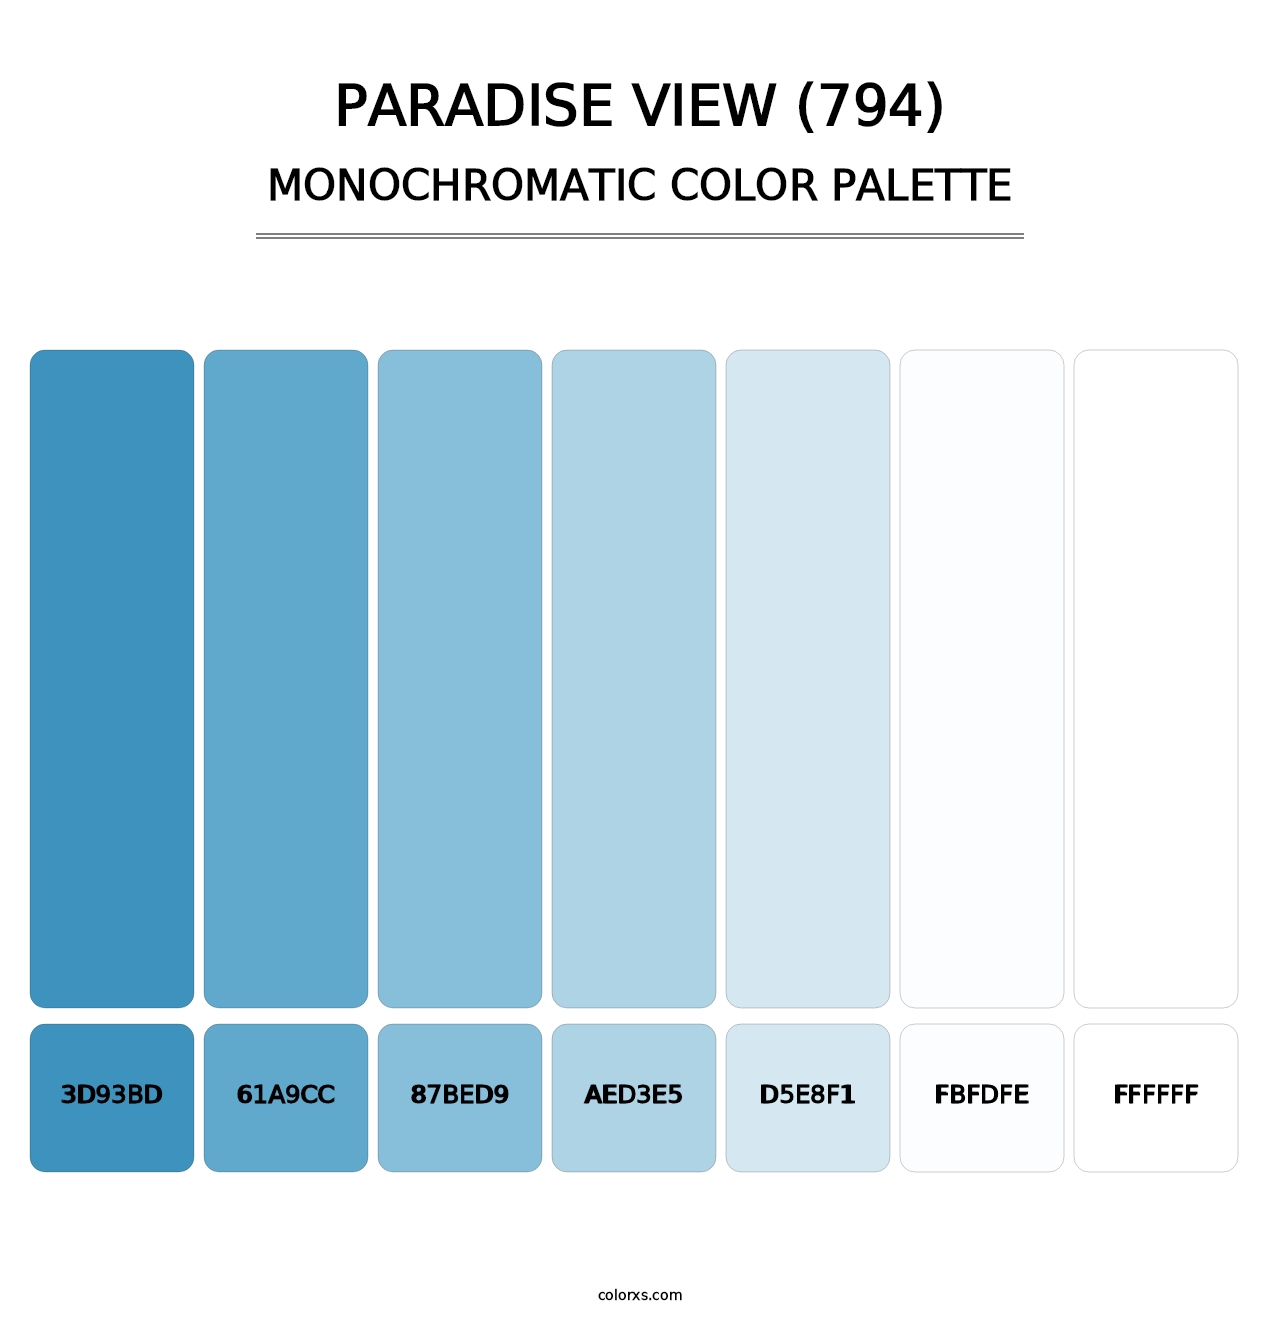 Paradise View (794) - Monochromatic Color Palette